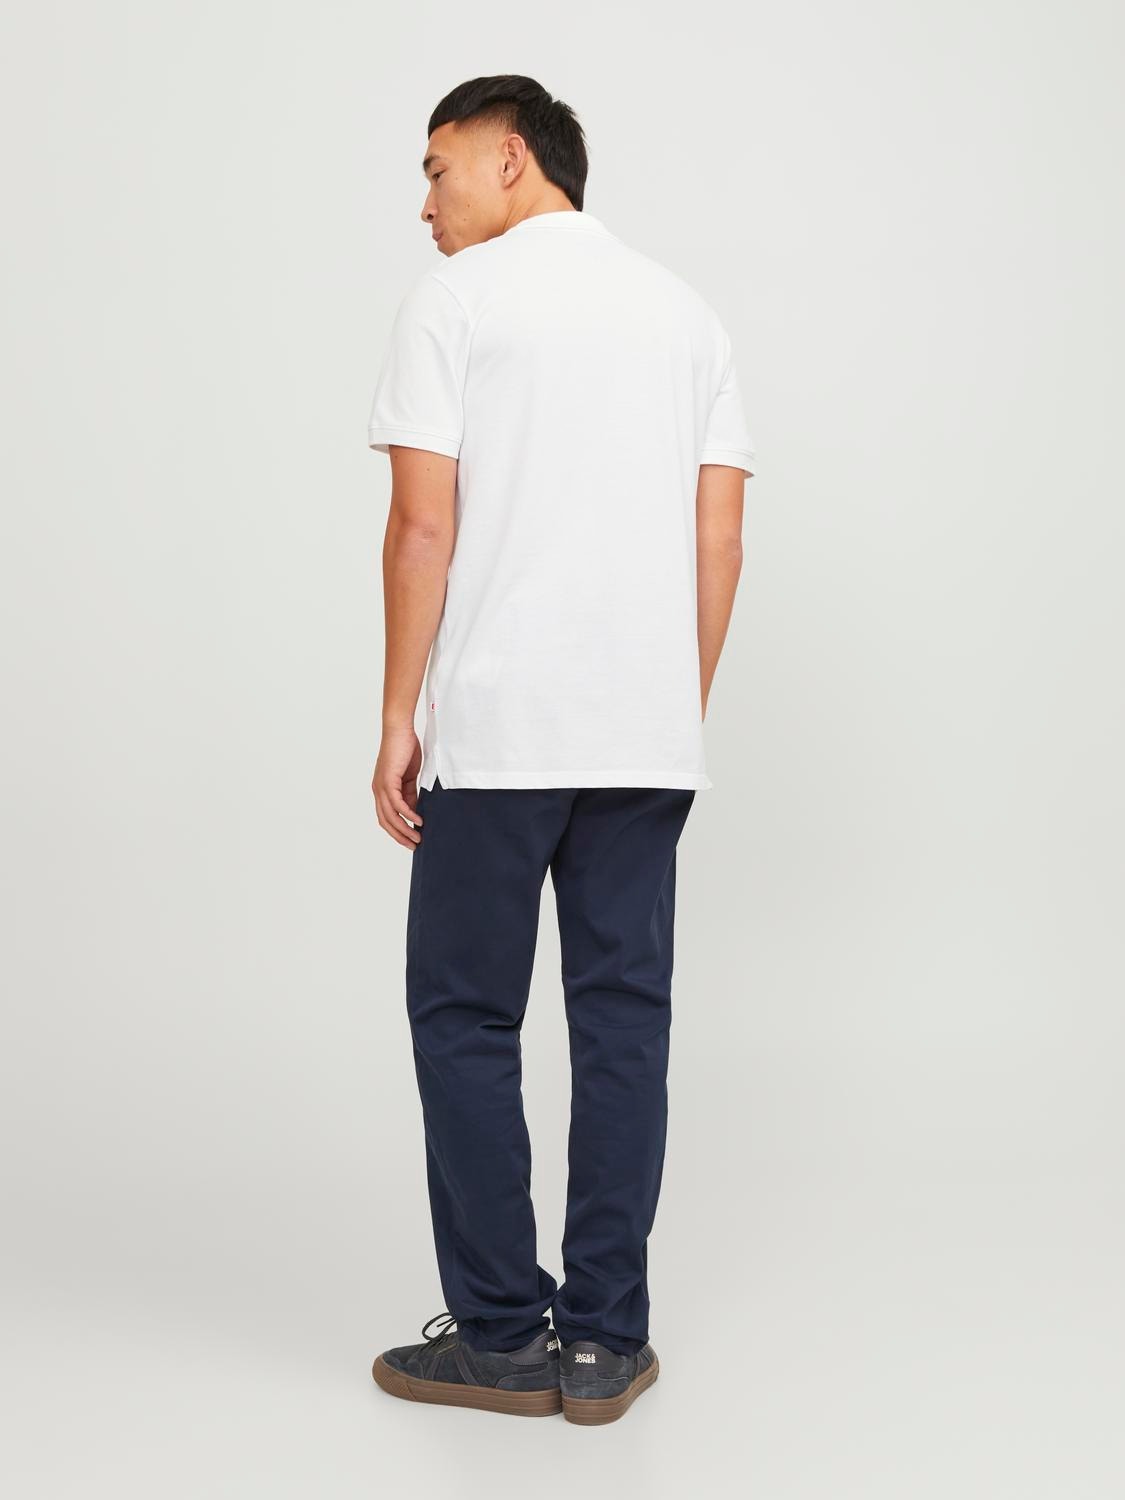 Jack & Jones Yksivärinen Polo T-shirt -White - 12136516